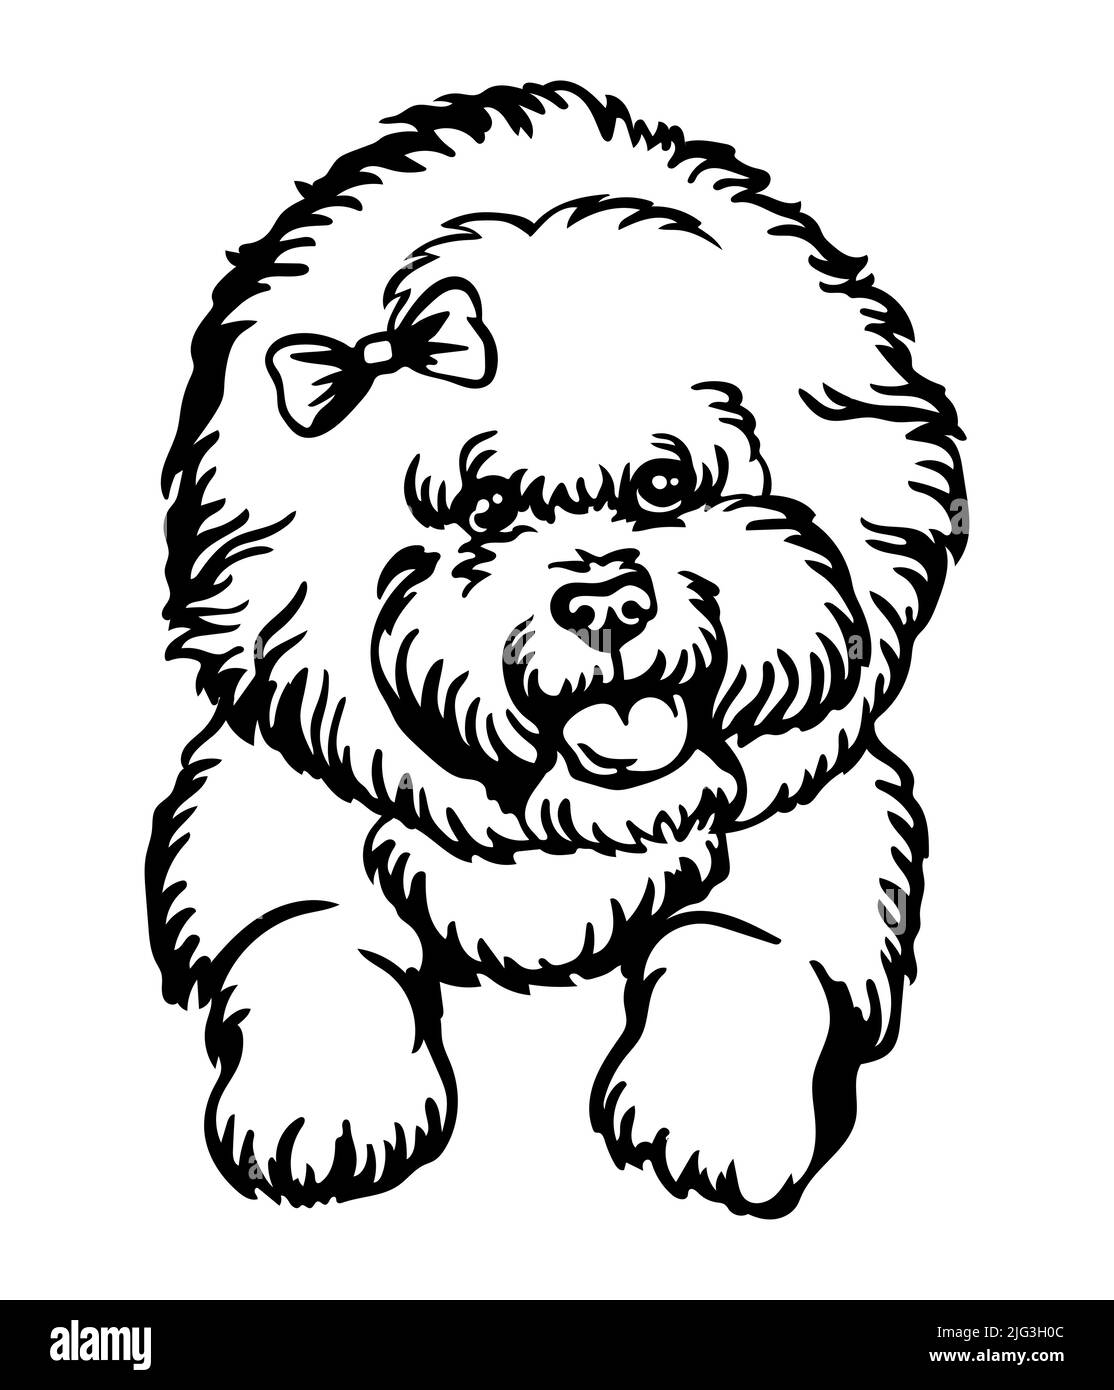 Bichon Frise perro negro contorno retrato. Cabeza de perro en la vista frontal ilustración de vector aislada en blanco. Para decoración, diseño, impresión, póster, postal, sti Ilustración del Vector